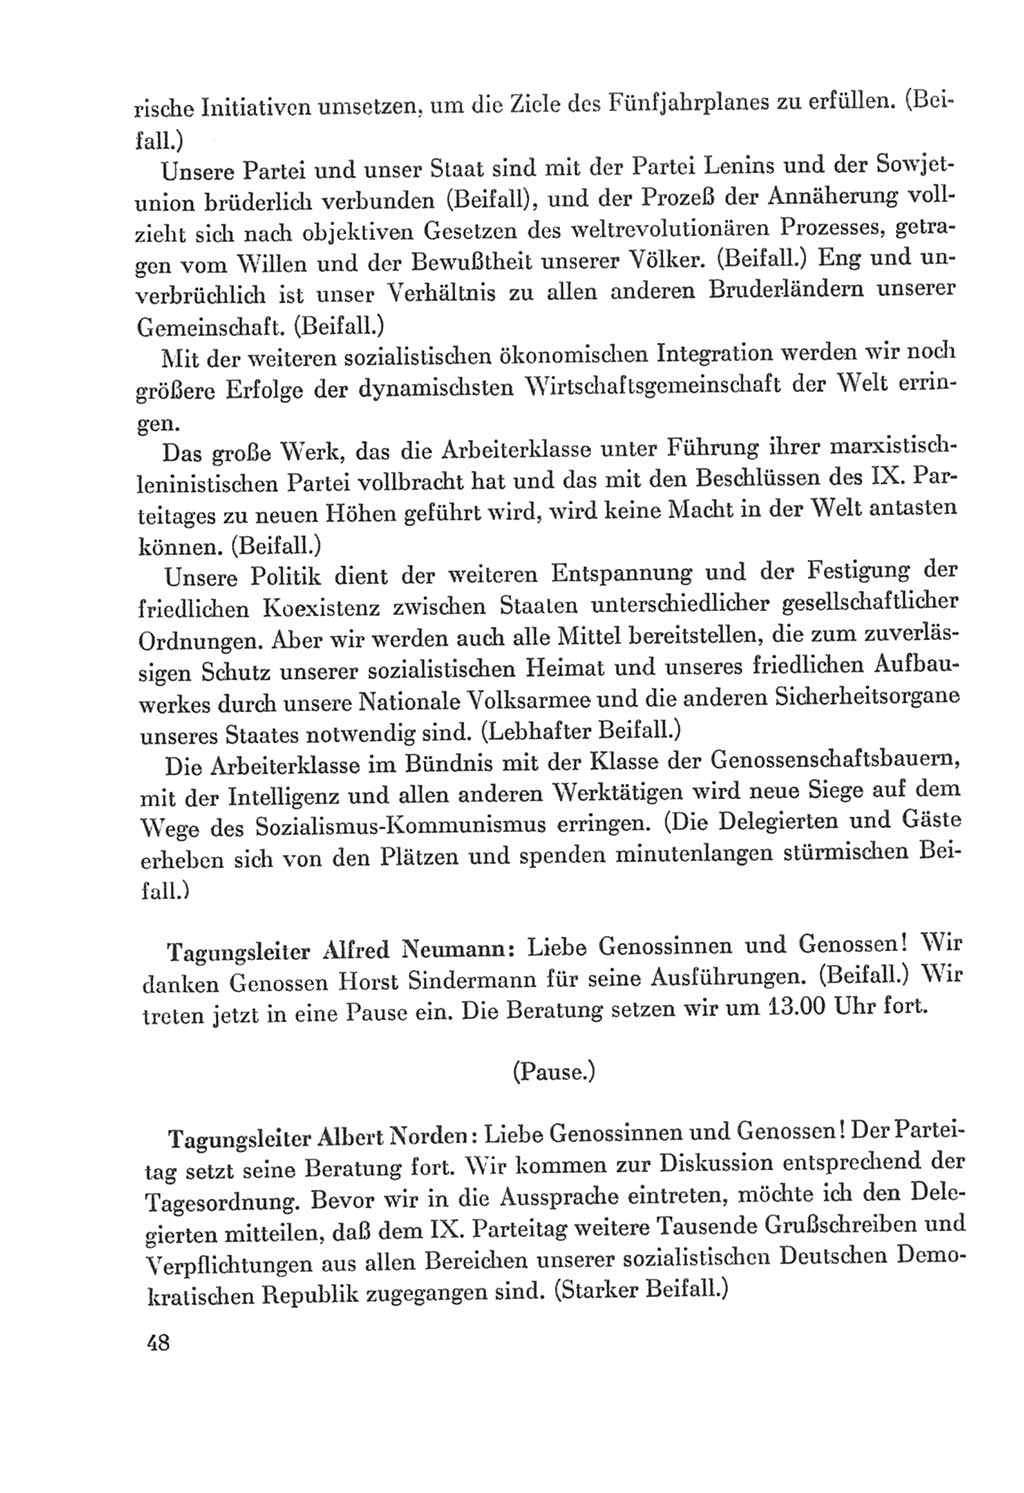 Protokoll der Verhandlungen des Ⅸ. Parteitages der Sozialistischen Einheitspartei Deutschlands (SED) [Deutsche Demokratische Republik (DDR)] 1976, Band 2, Seite 48 (Prot. Verh. Ⅸ. PT SED DDR 1976, Bd. 2, S. 48)